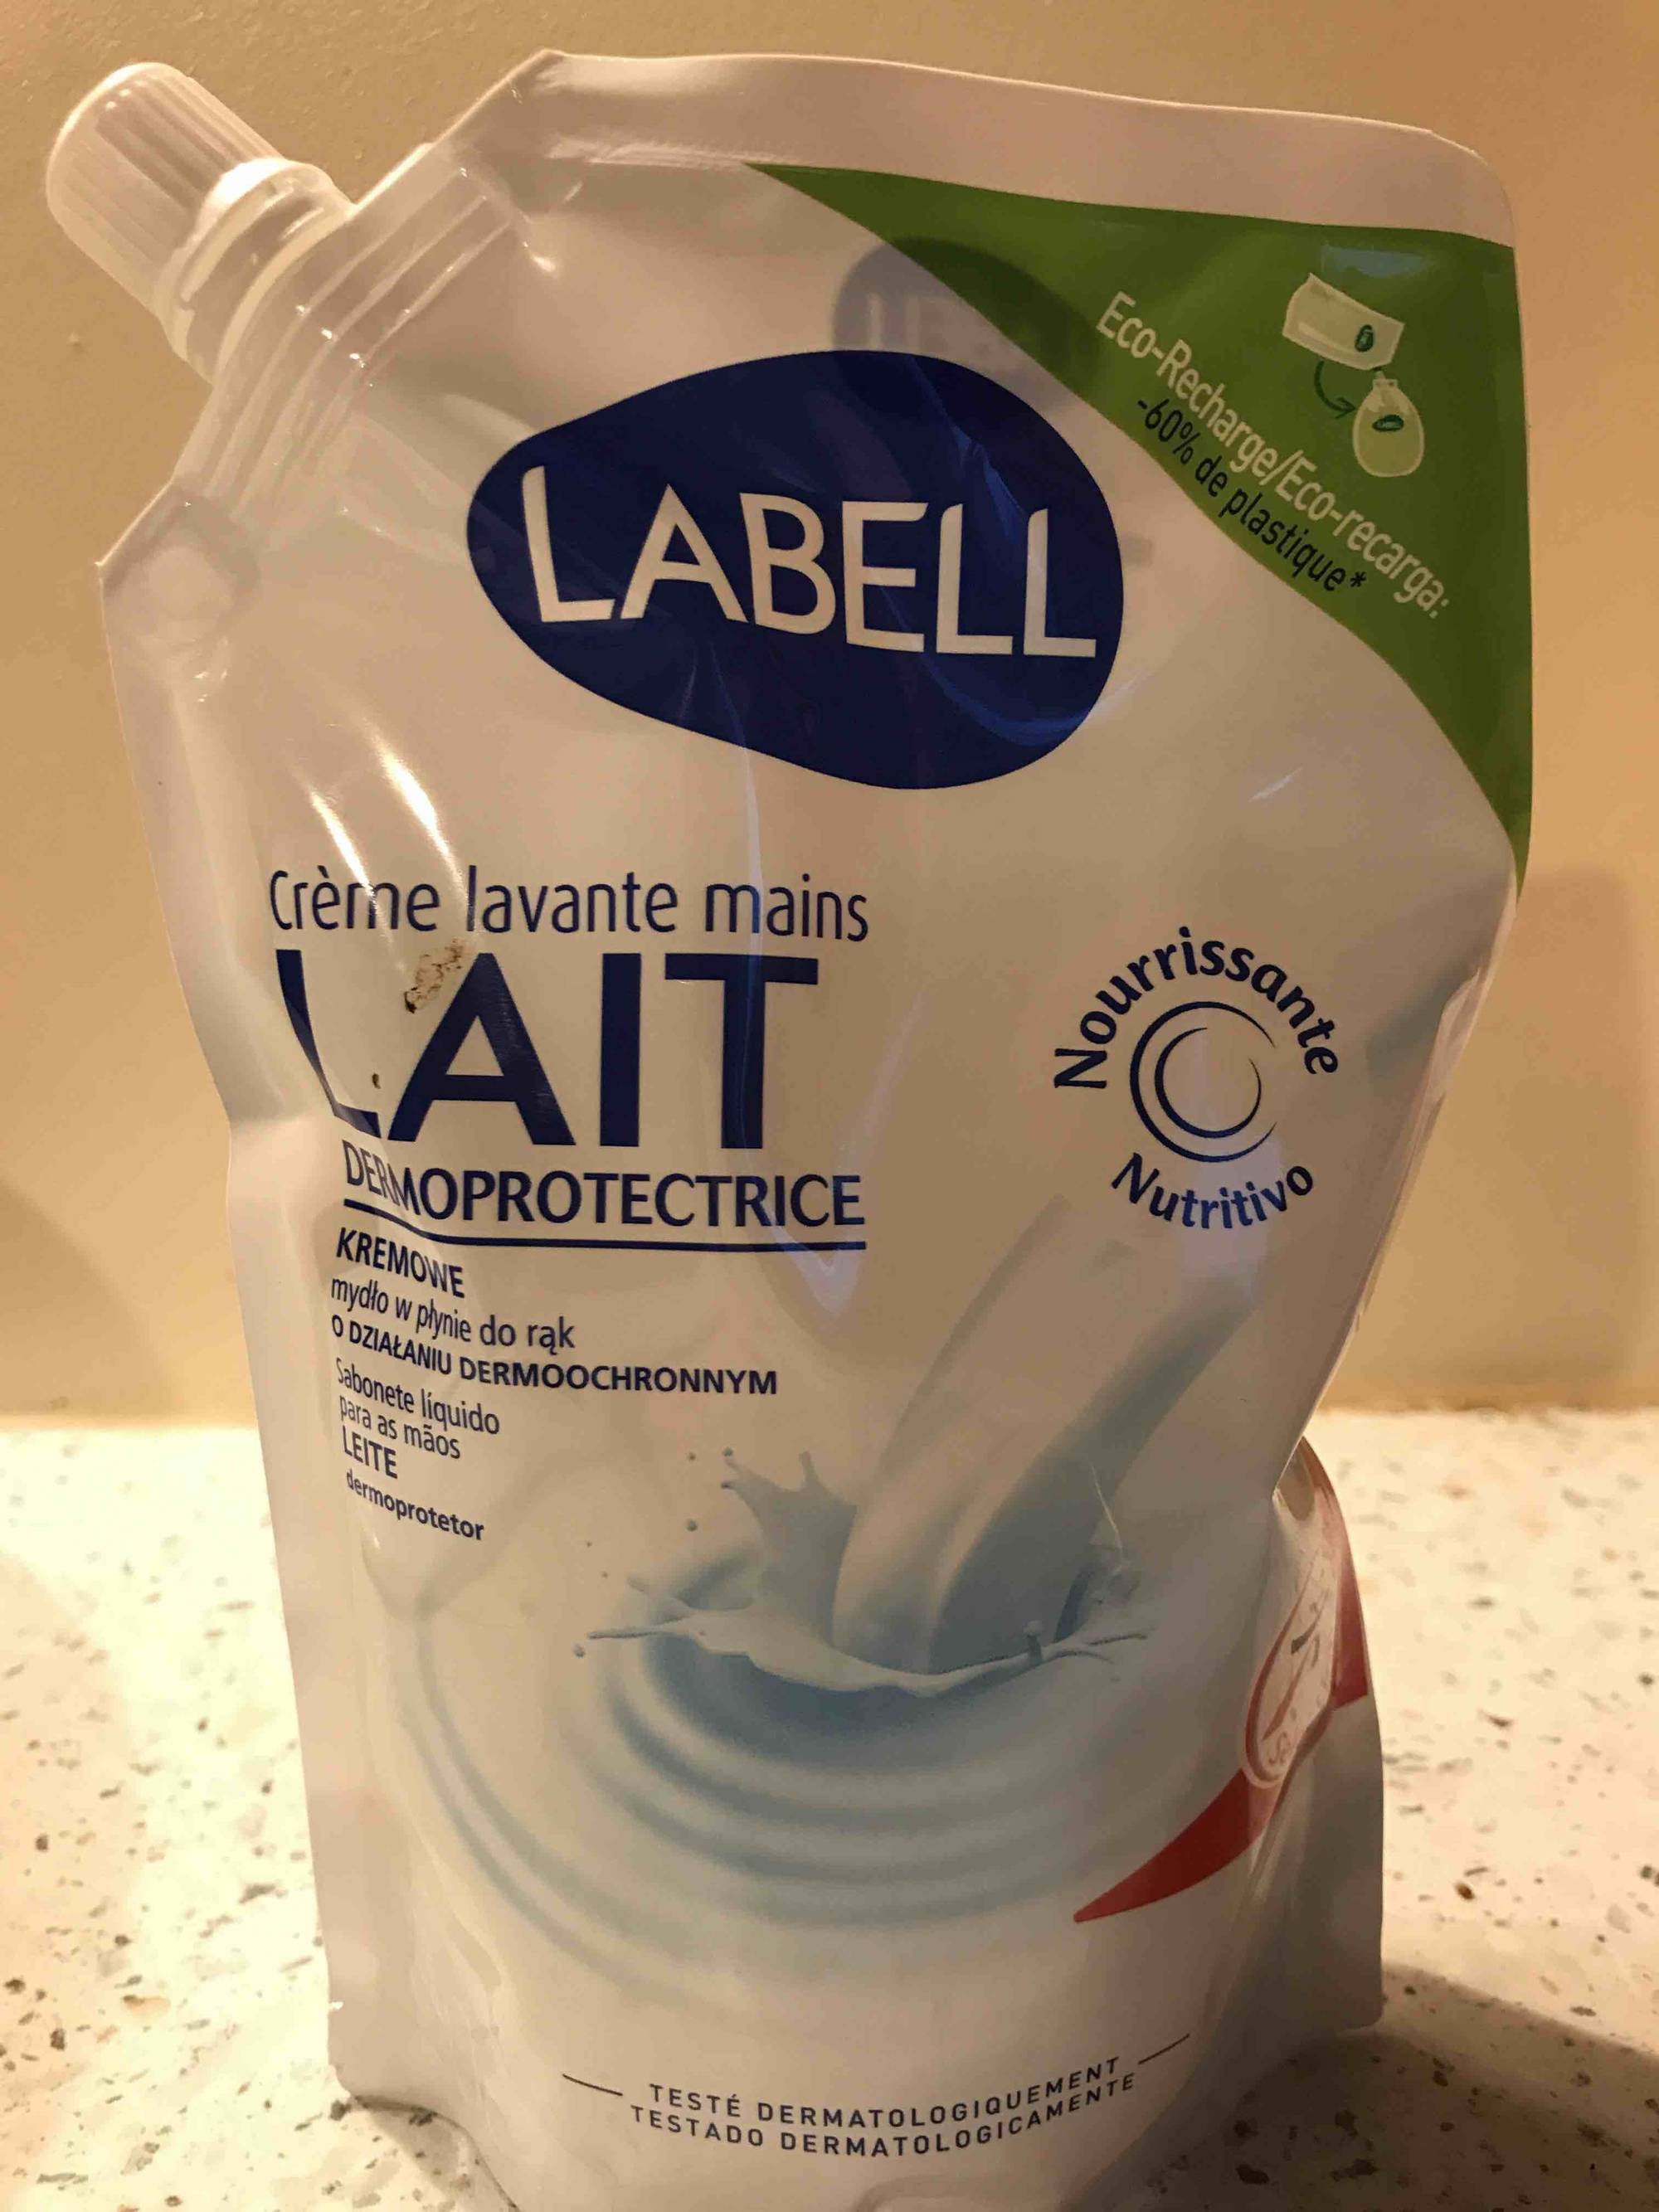 LABELL - Lait dermoprotectrice - Crème lavante mains